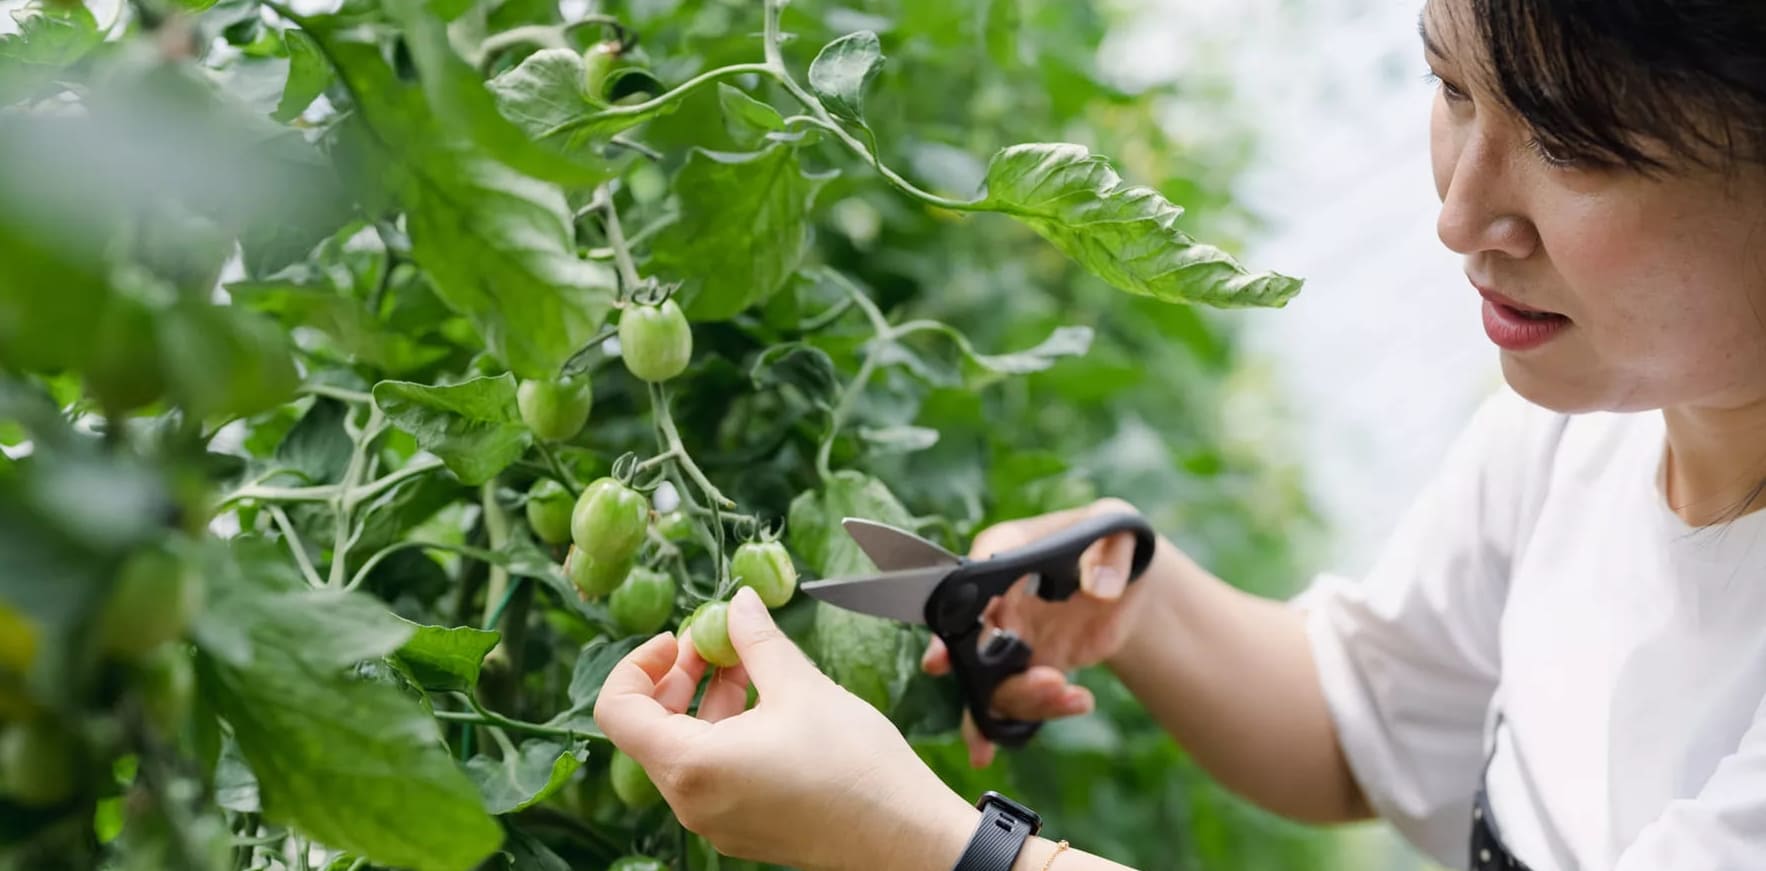 6 Yksinkertaista vinkkiä tomaattikasvien leikkaamiseen sadon lisäämiseksi